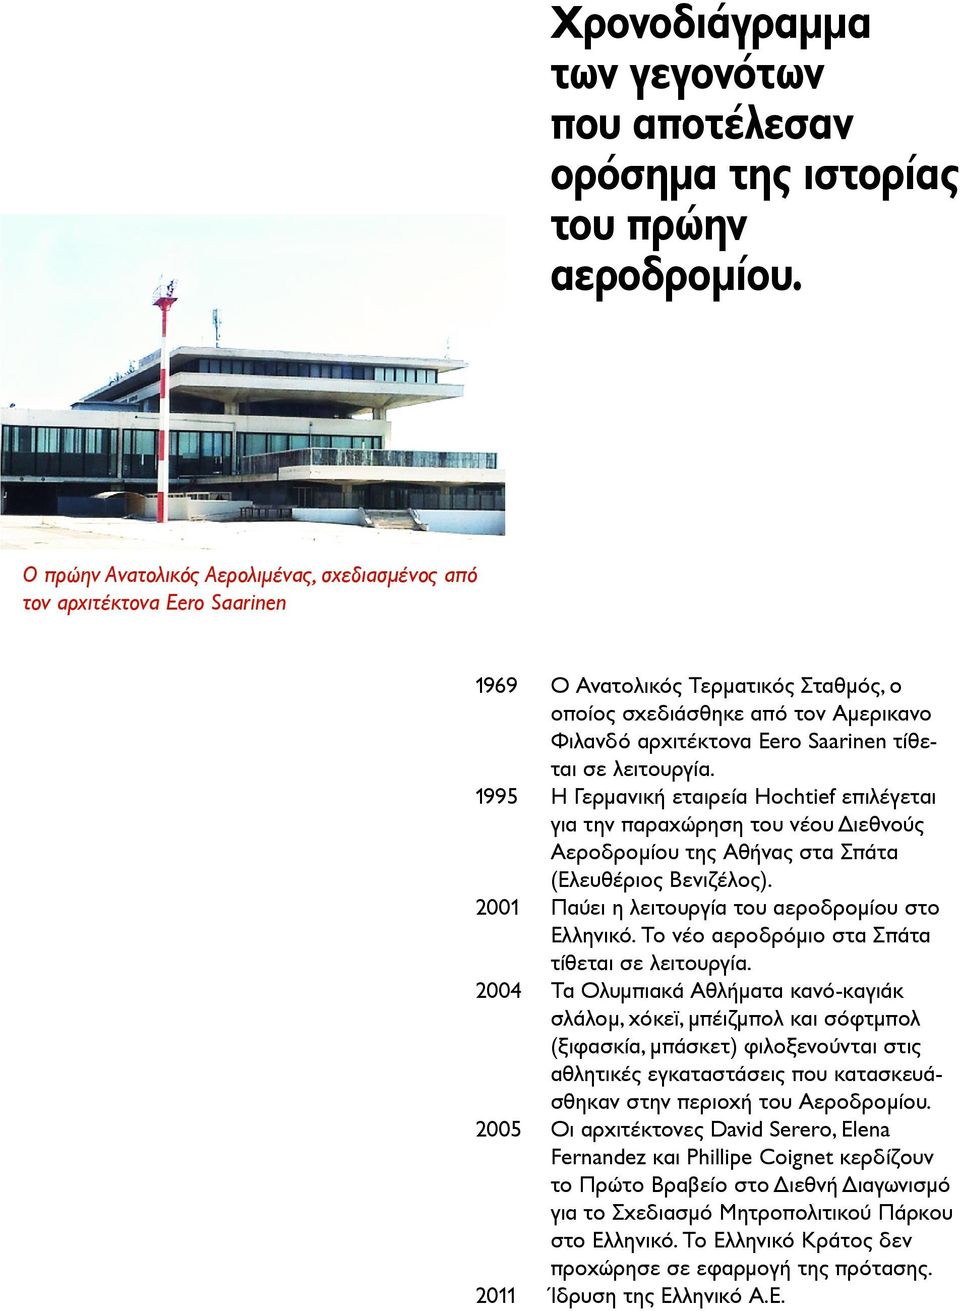 αρχιτέκτονα Eero Saarinen τίθεται σε λειτουργία. Η Γερμανική εταιρεία Hochtief επιλέγεται για την παραχώρηση του νέου Διεθνούς Αεροδρομίου της Αθήνας στα Σπάτα (Ελευθέριος Βενιζέλος).